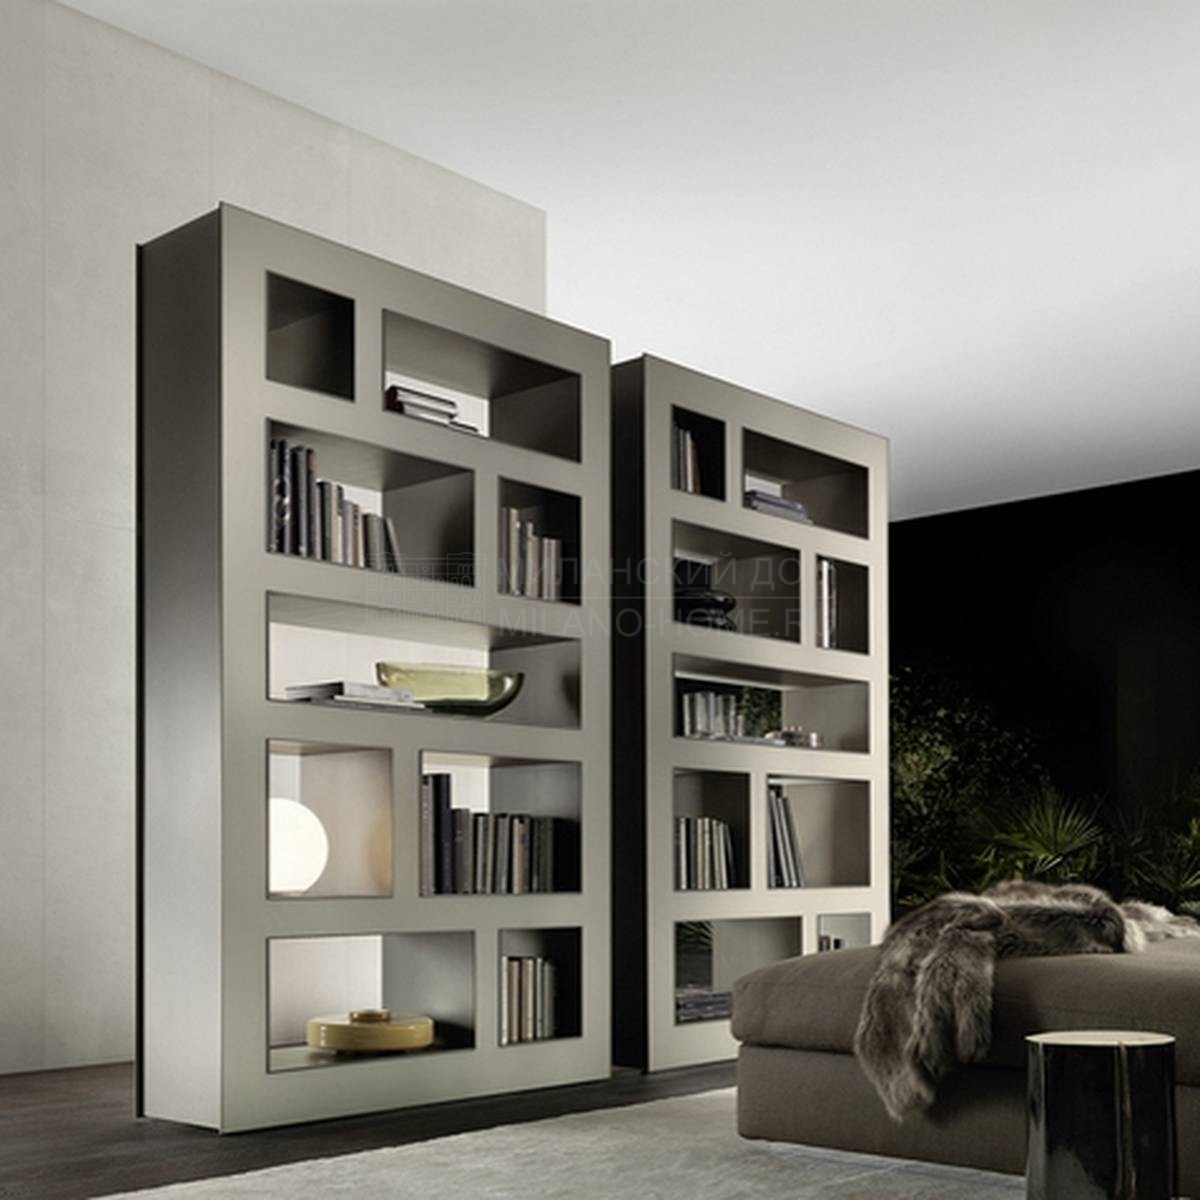 Библиотека Stele bookcase из Италии фабрики RIMADESIO